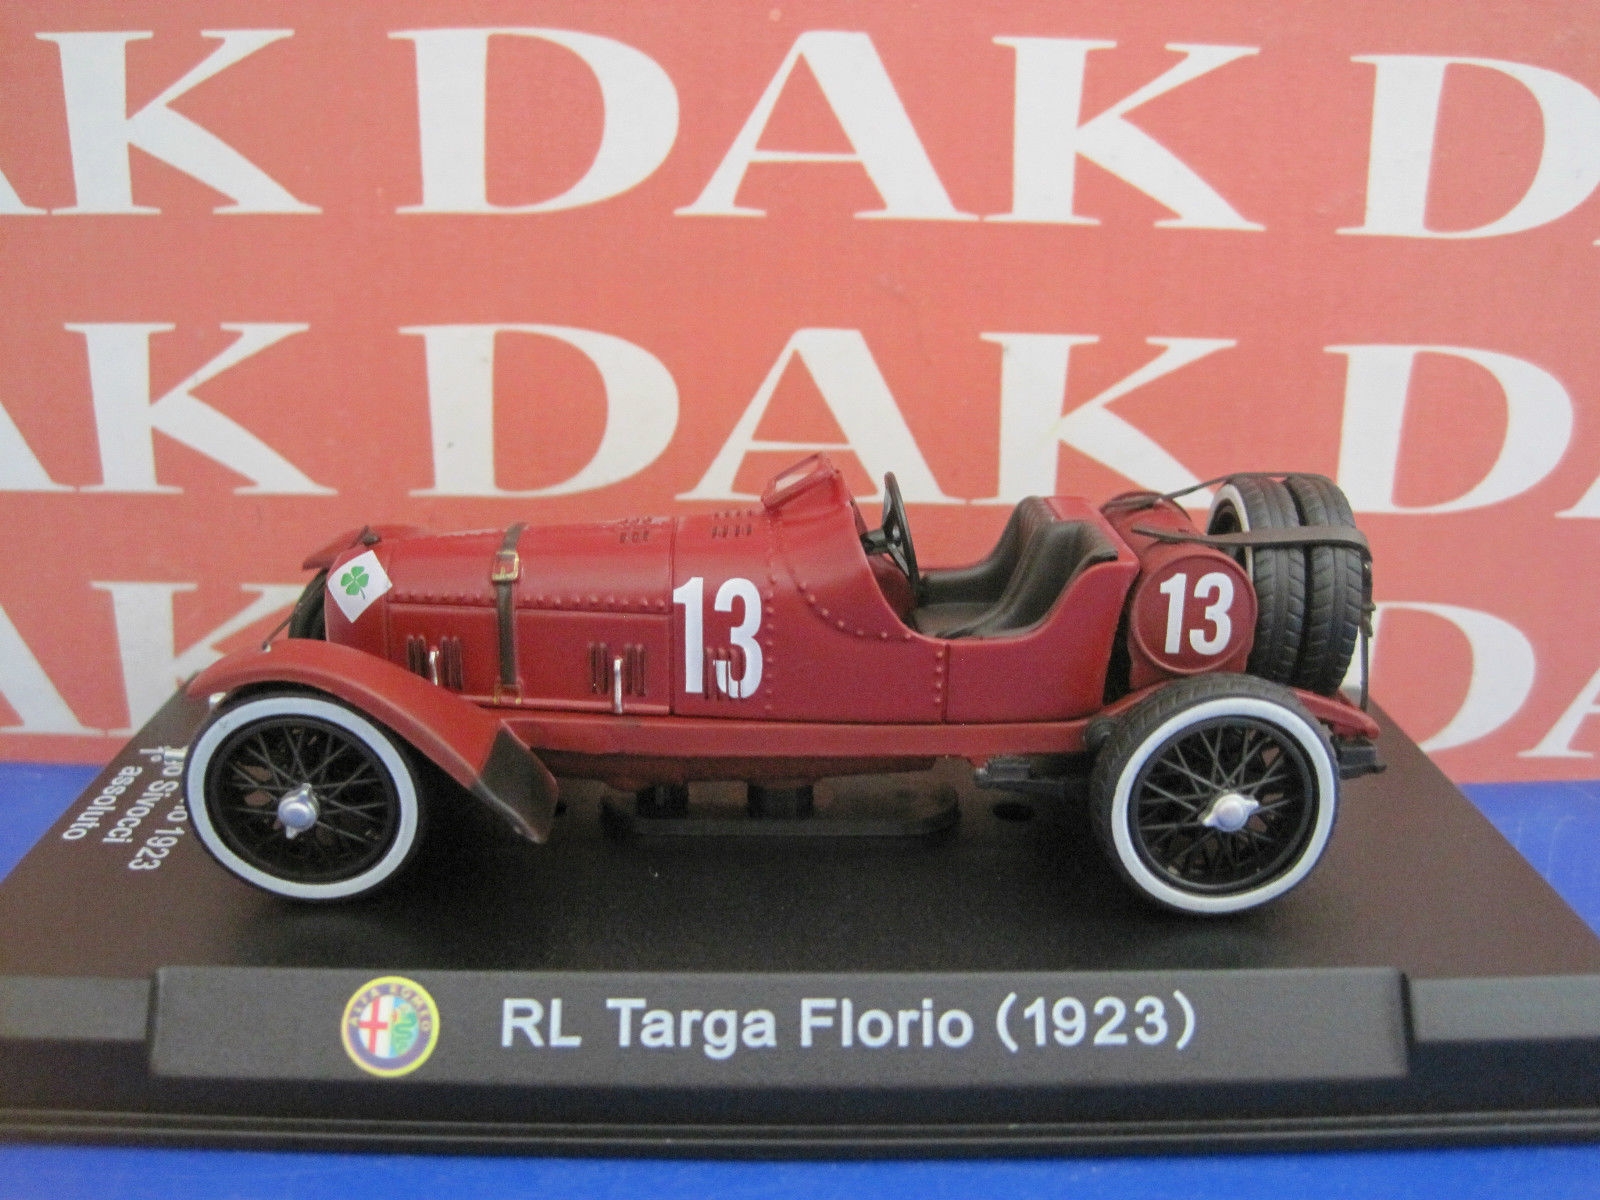 Alfa Romeo Rl Targa Florio Wallpapers